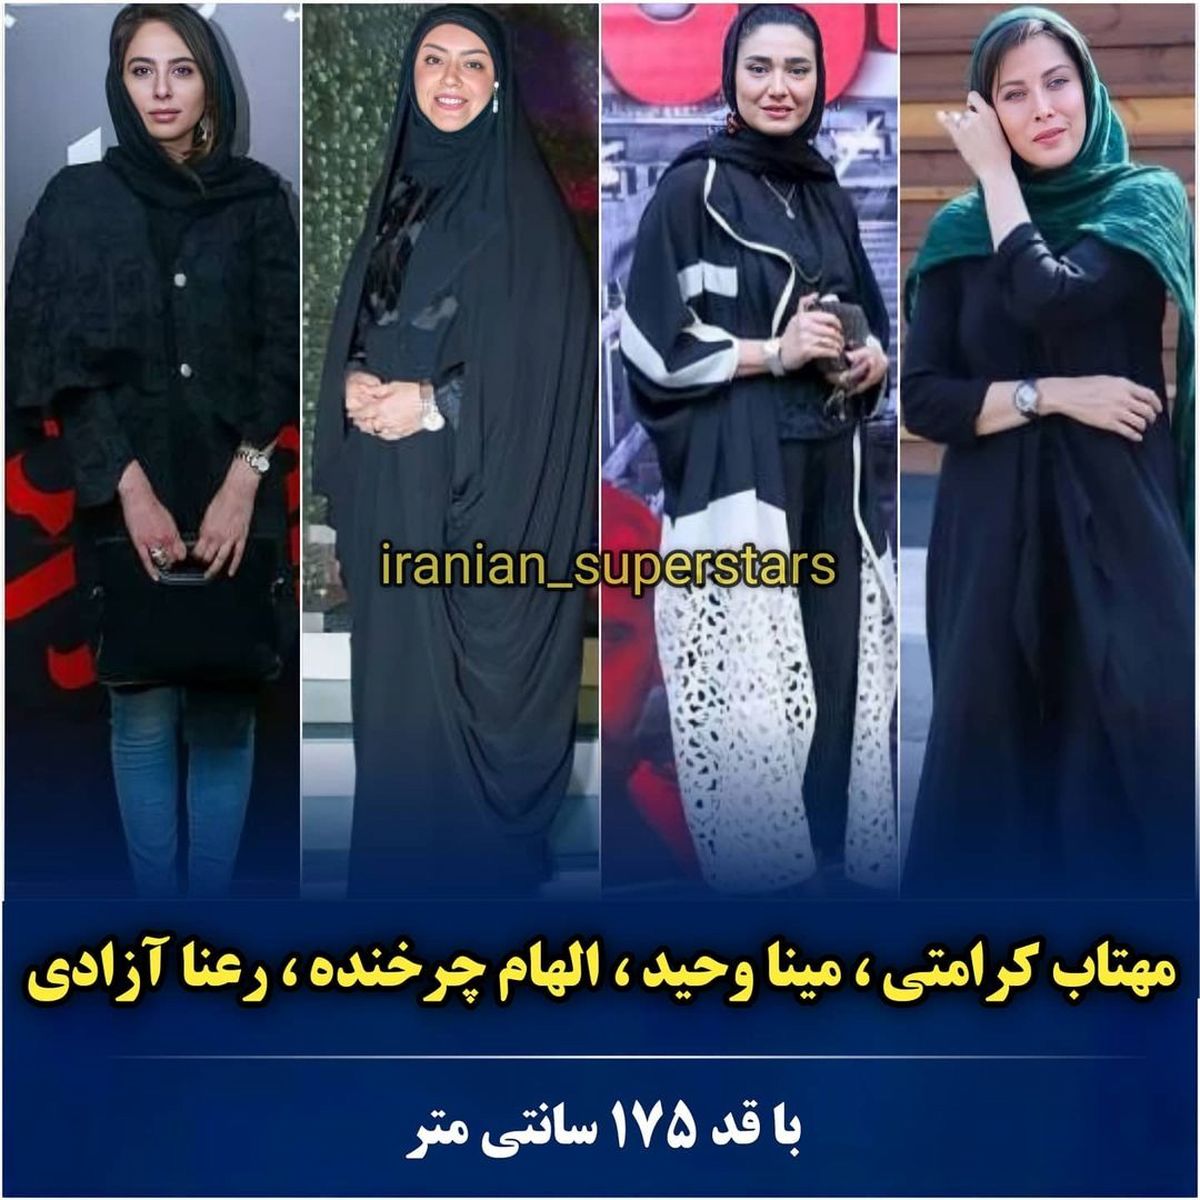 iranian_superstars_1626167754_8